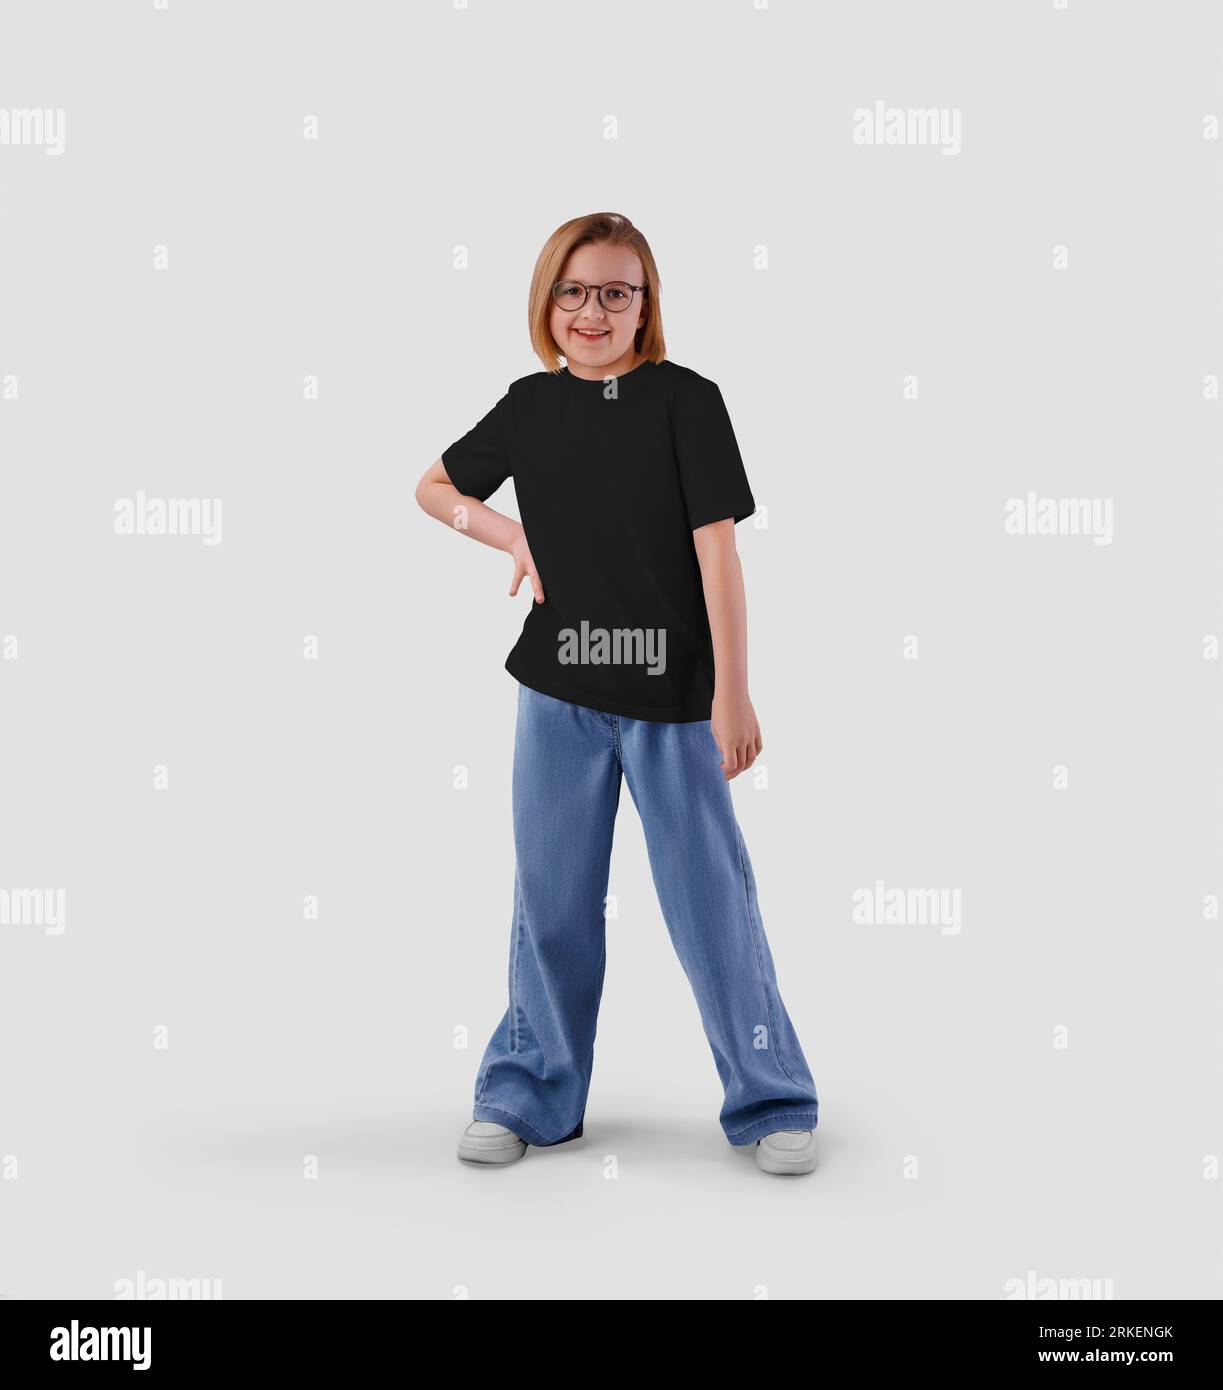 Modello di t-shirt nera per bambini su una ragazza con occhiali in piena crescita, vista frontale, per il design. Mockup di abiti in tessuto isolato sullo sfondo. Prod Foto Stock